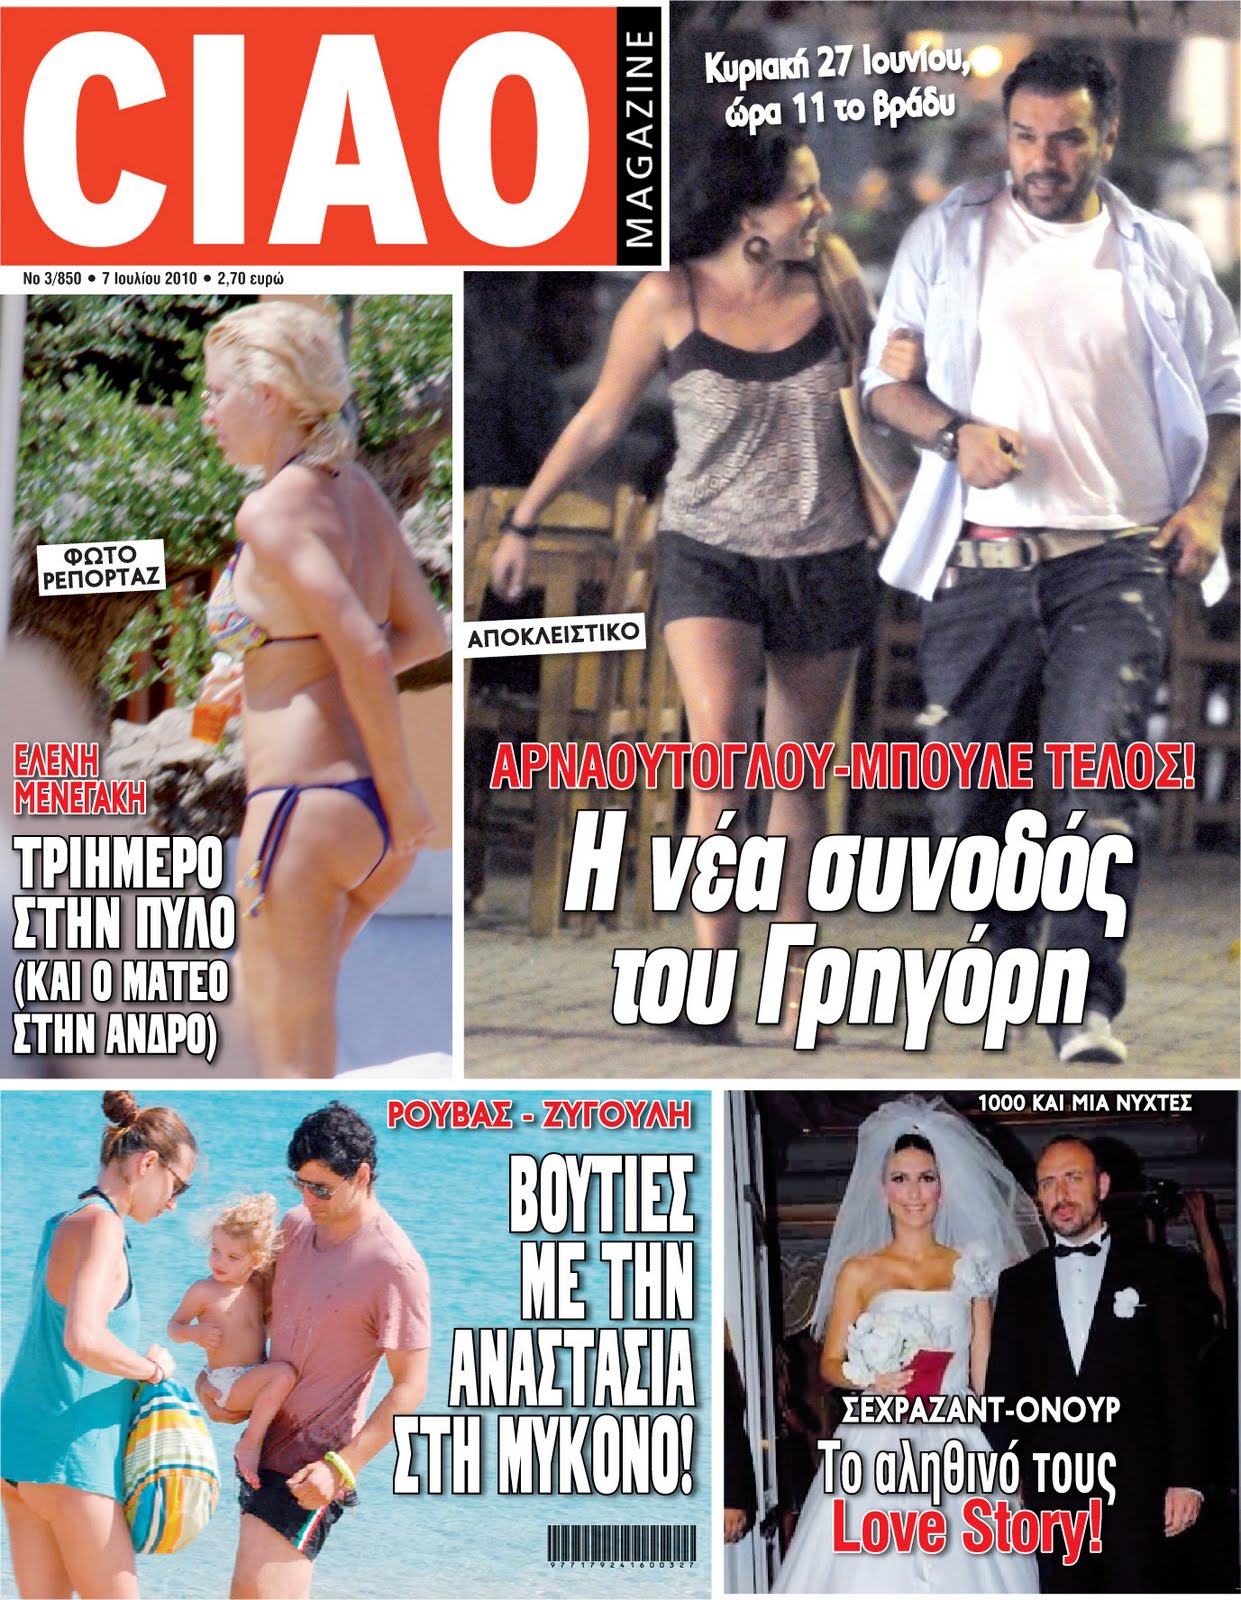 Αύριο κυκλοφορεί το νέο τεύχος του «Ciao magazine»